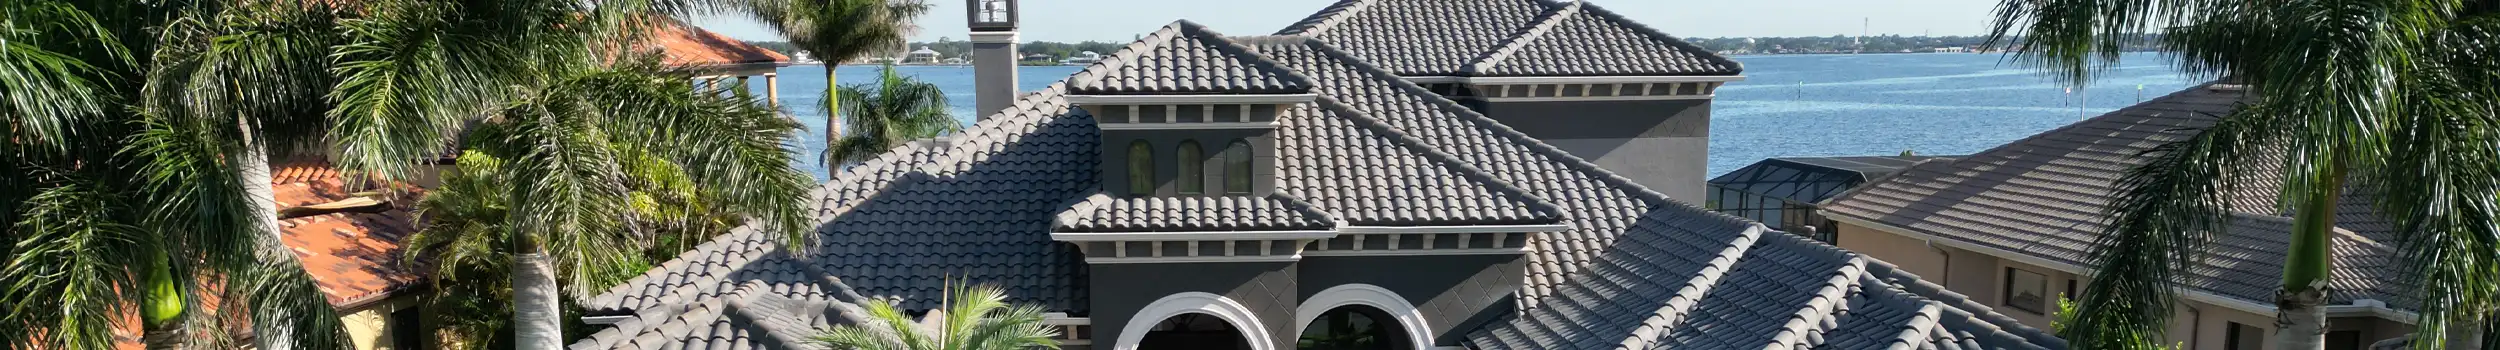 Tile Roof Replacement Sarasota Florida